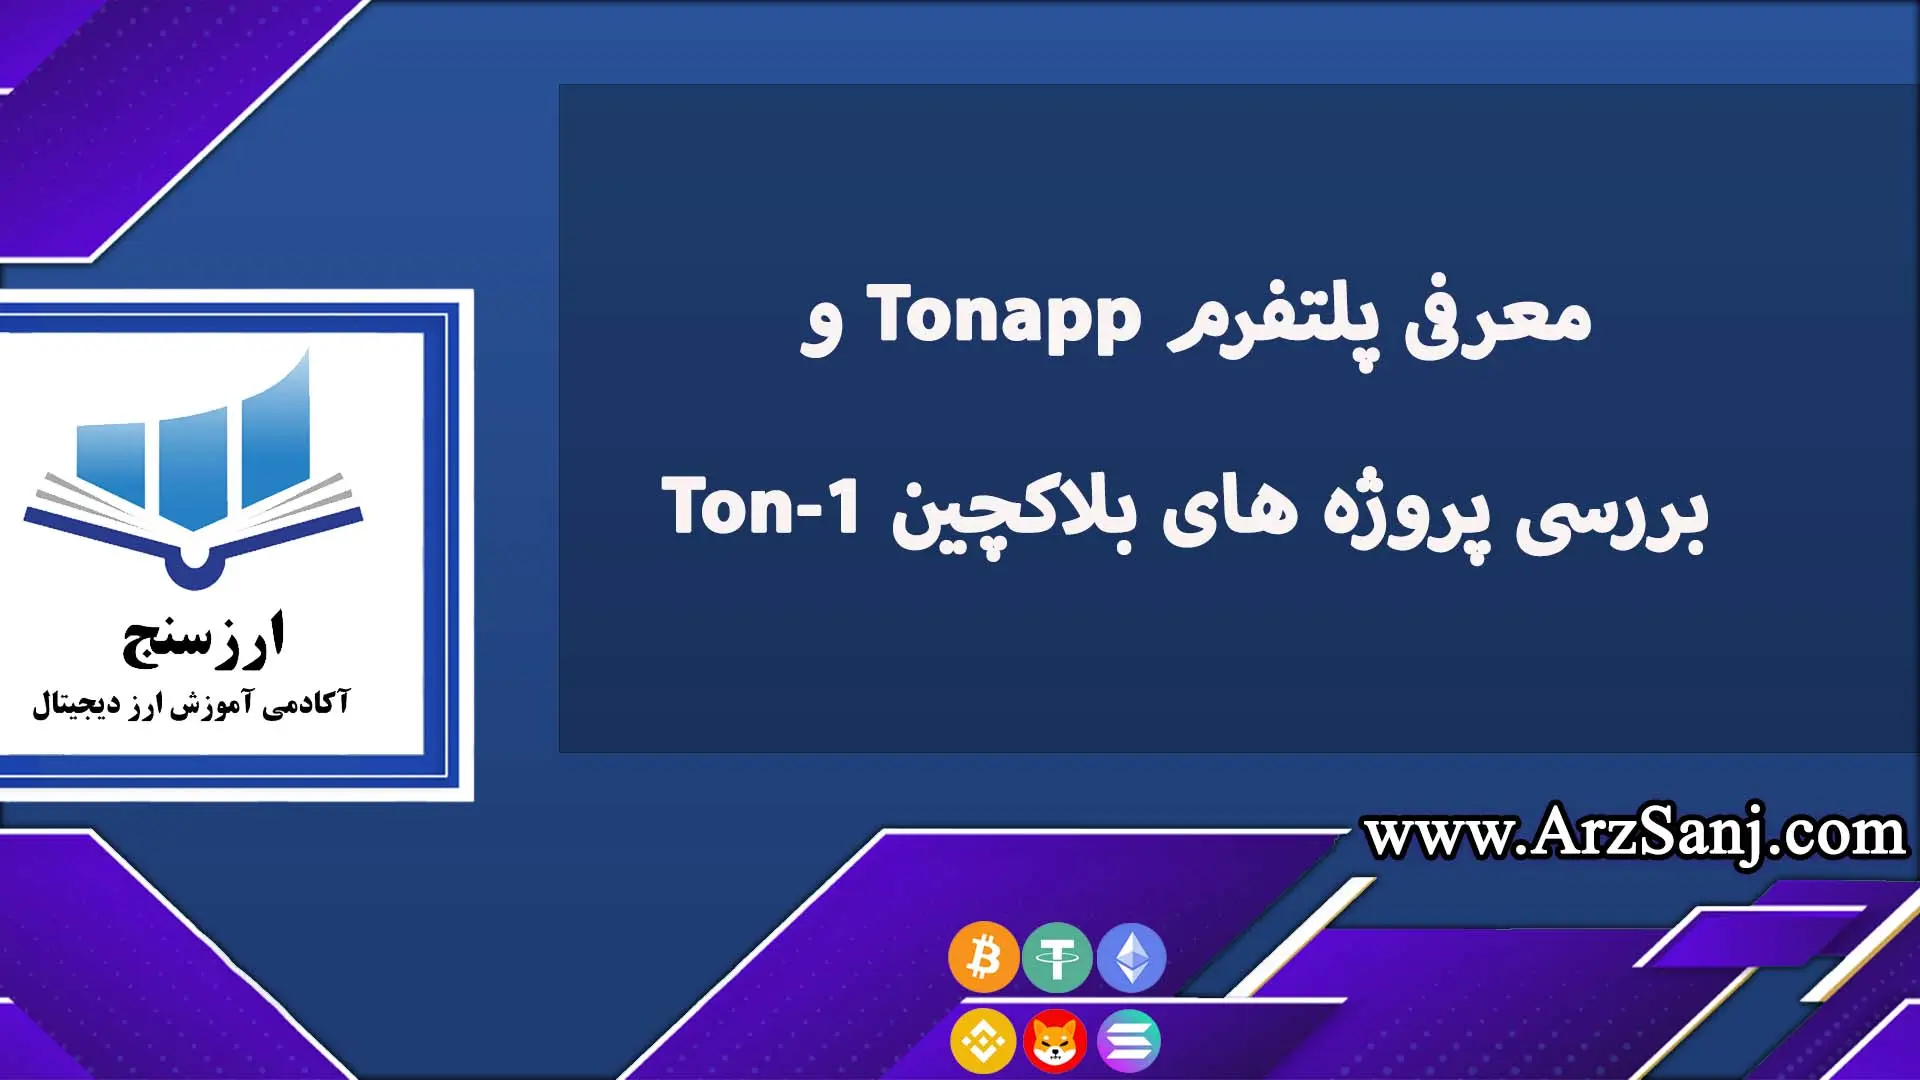 معرفی پلتفرم Tonapp و بررسی پروژه های بلاکچین Ton